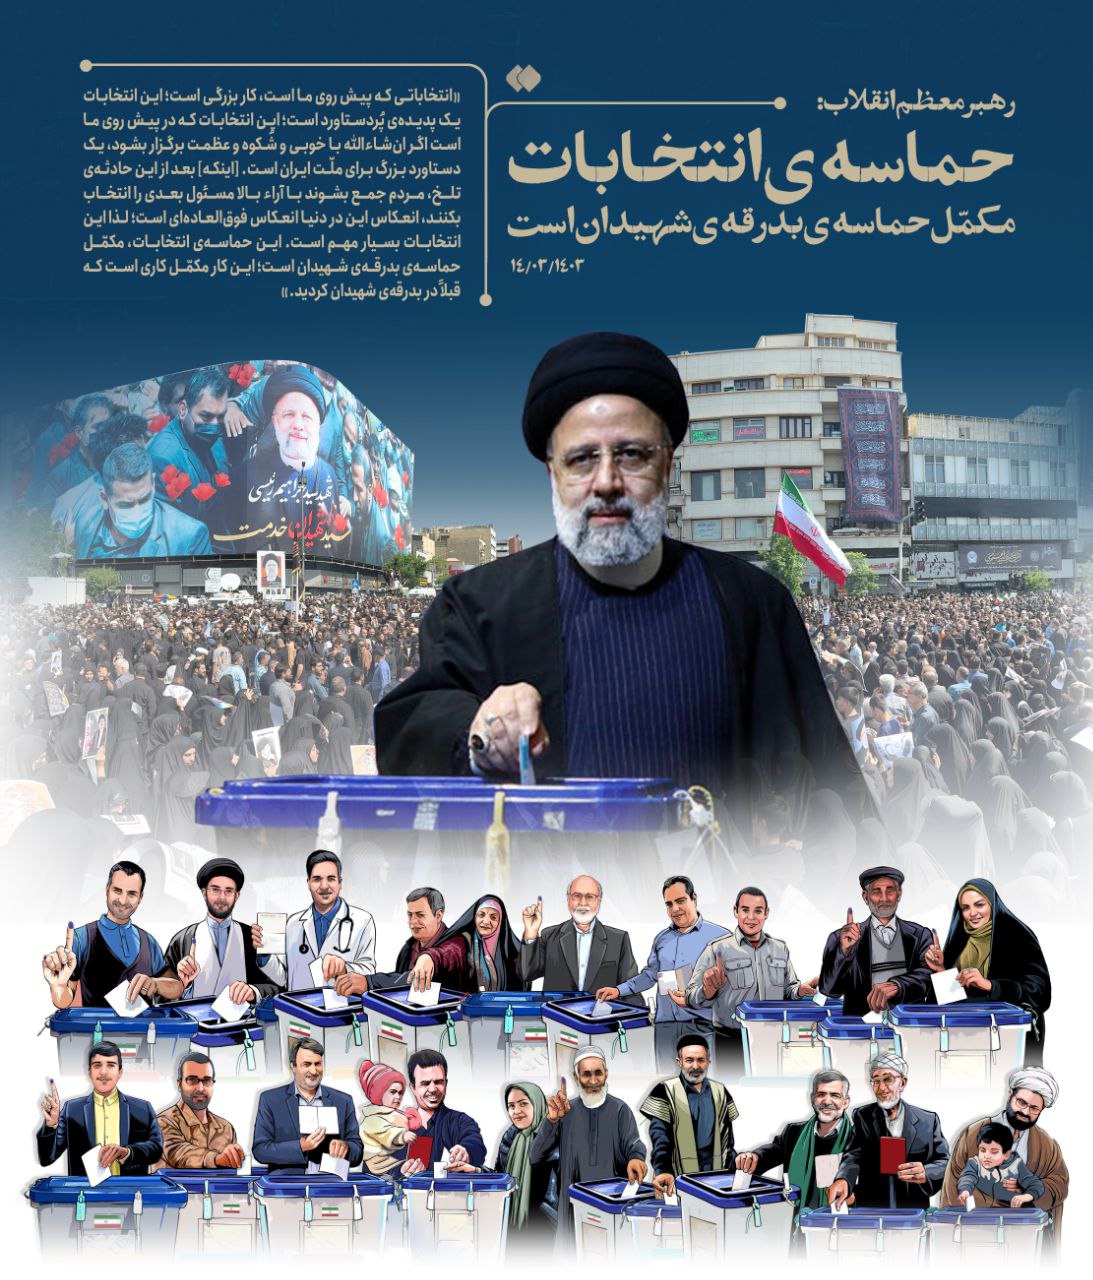 طرح/ پوستر ویژه حماسه انتخابات، مکمل حماسه بدرقه شهیدان